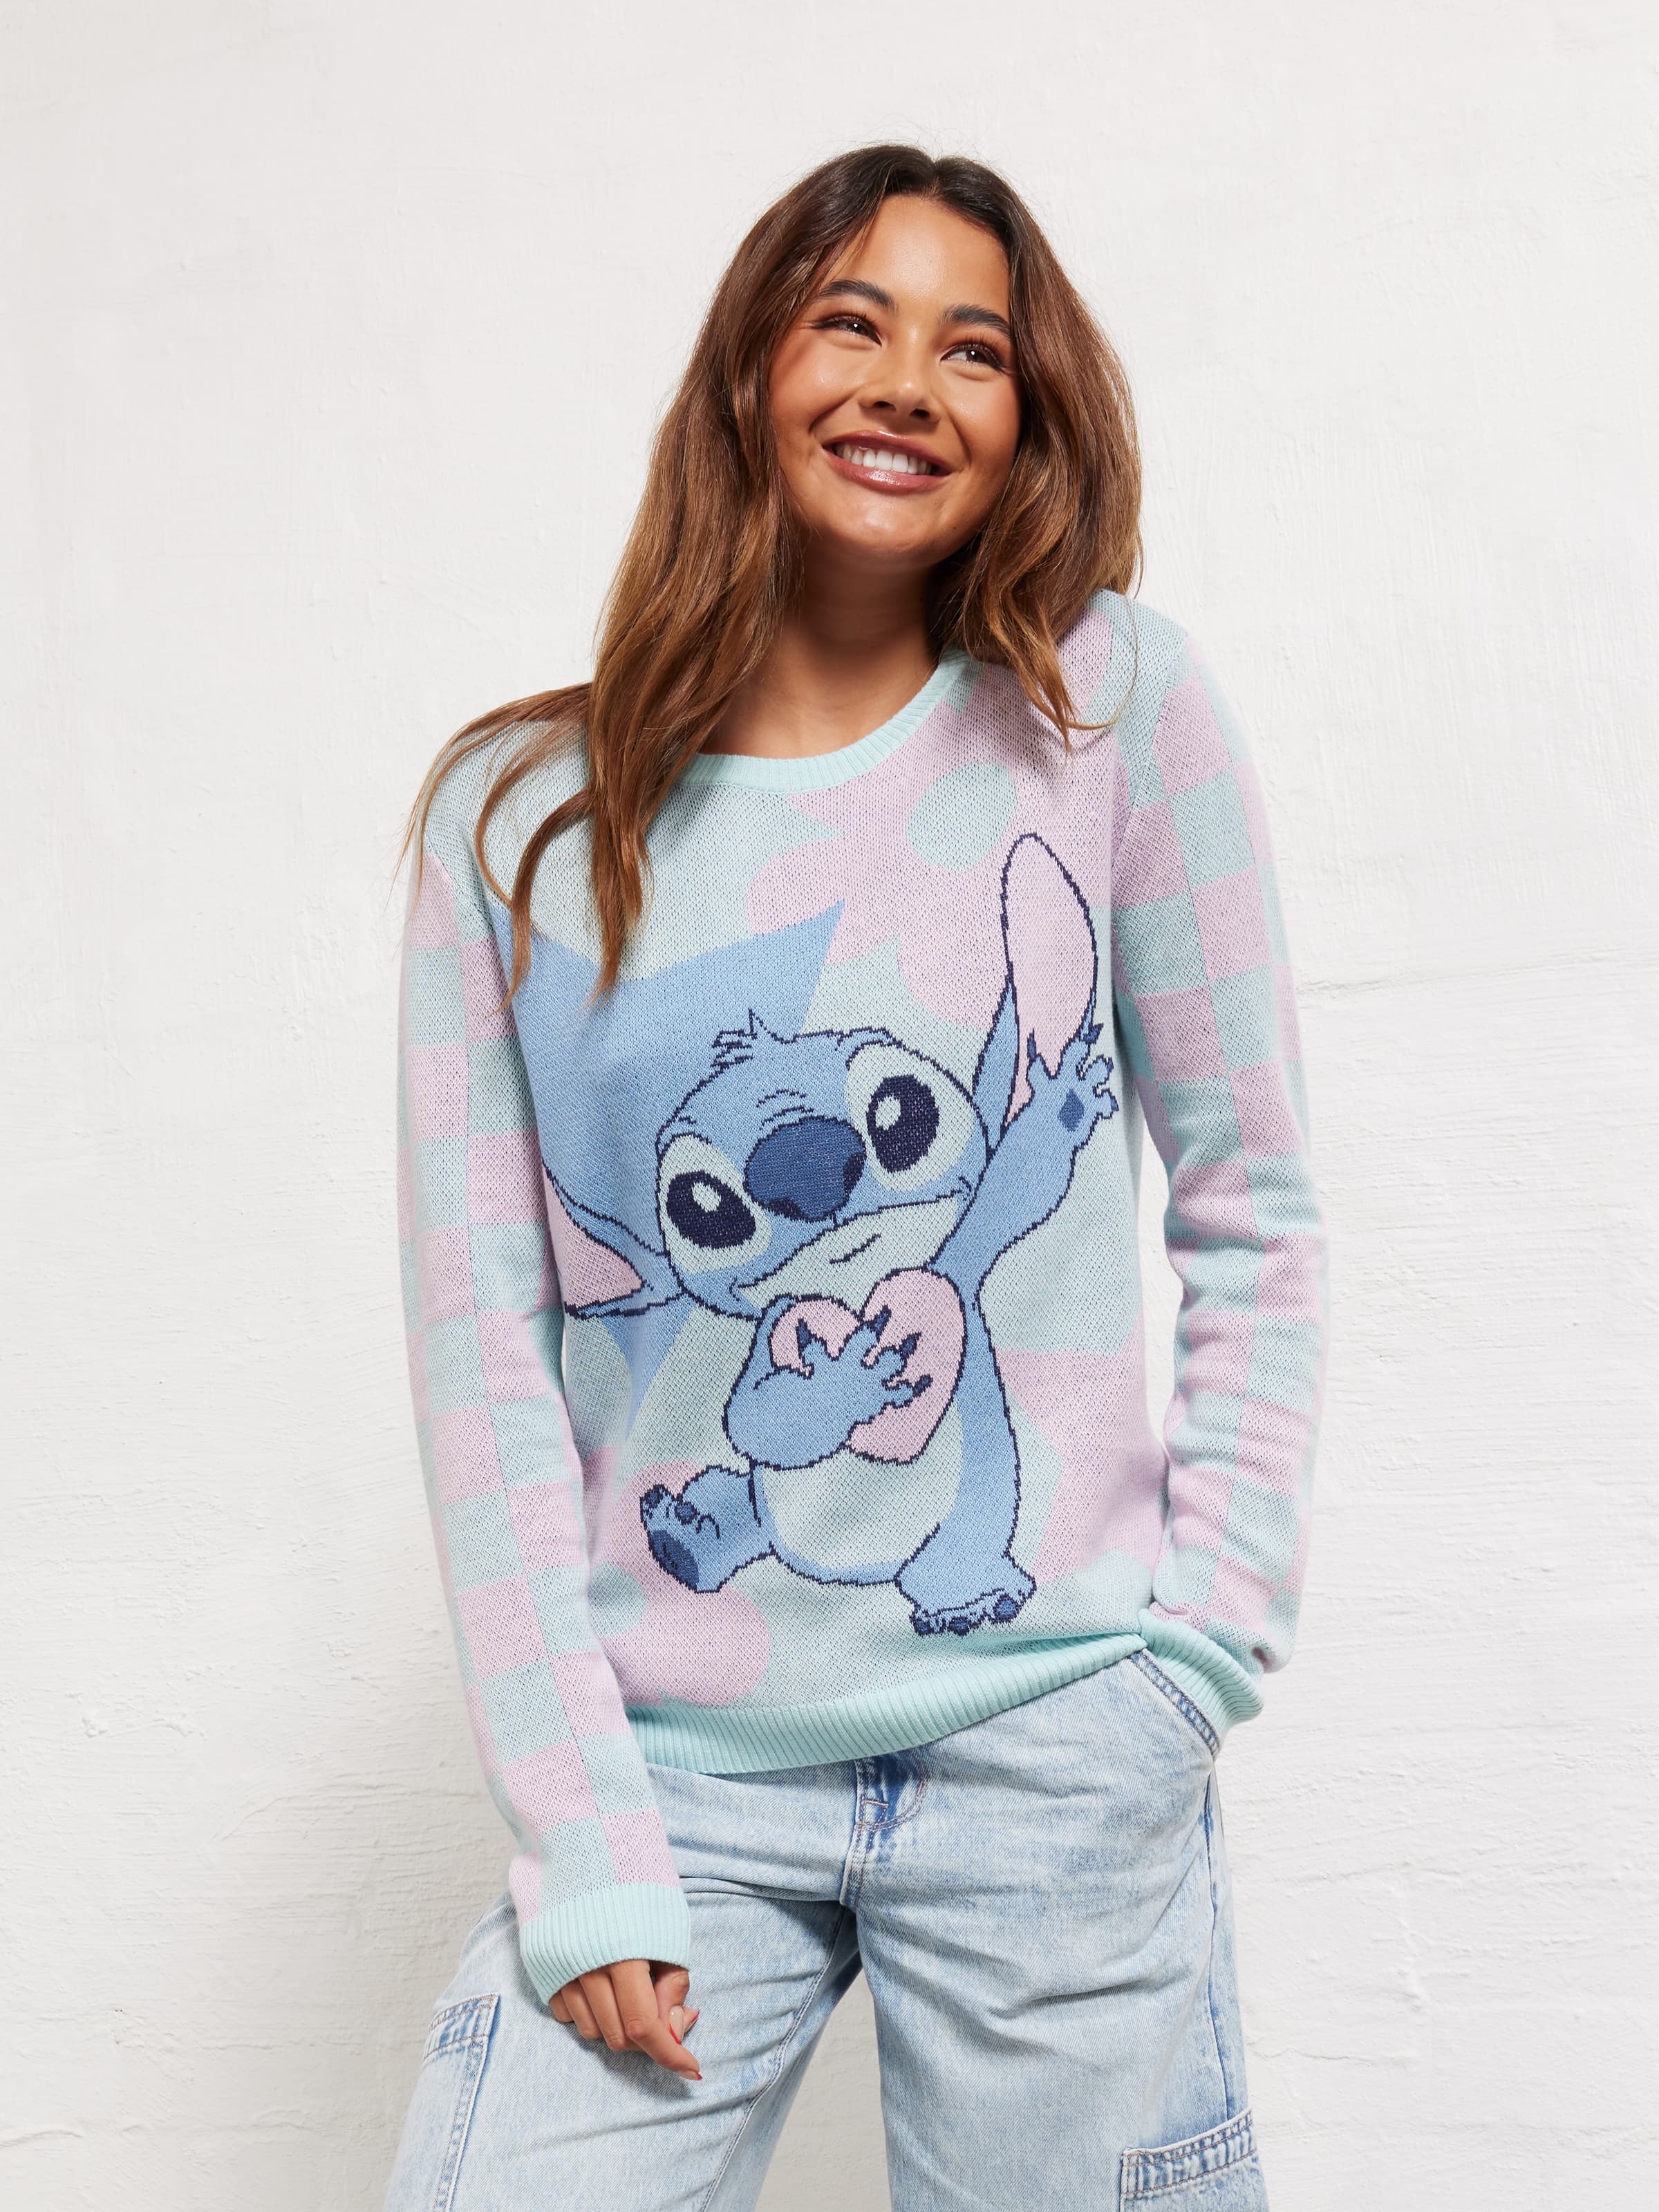 Buy Brand Threads Disney Girls Lilo & Stitch Pyjamas from Next Spain